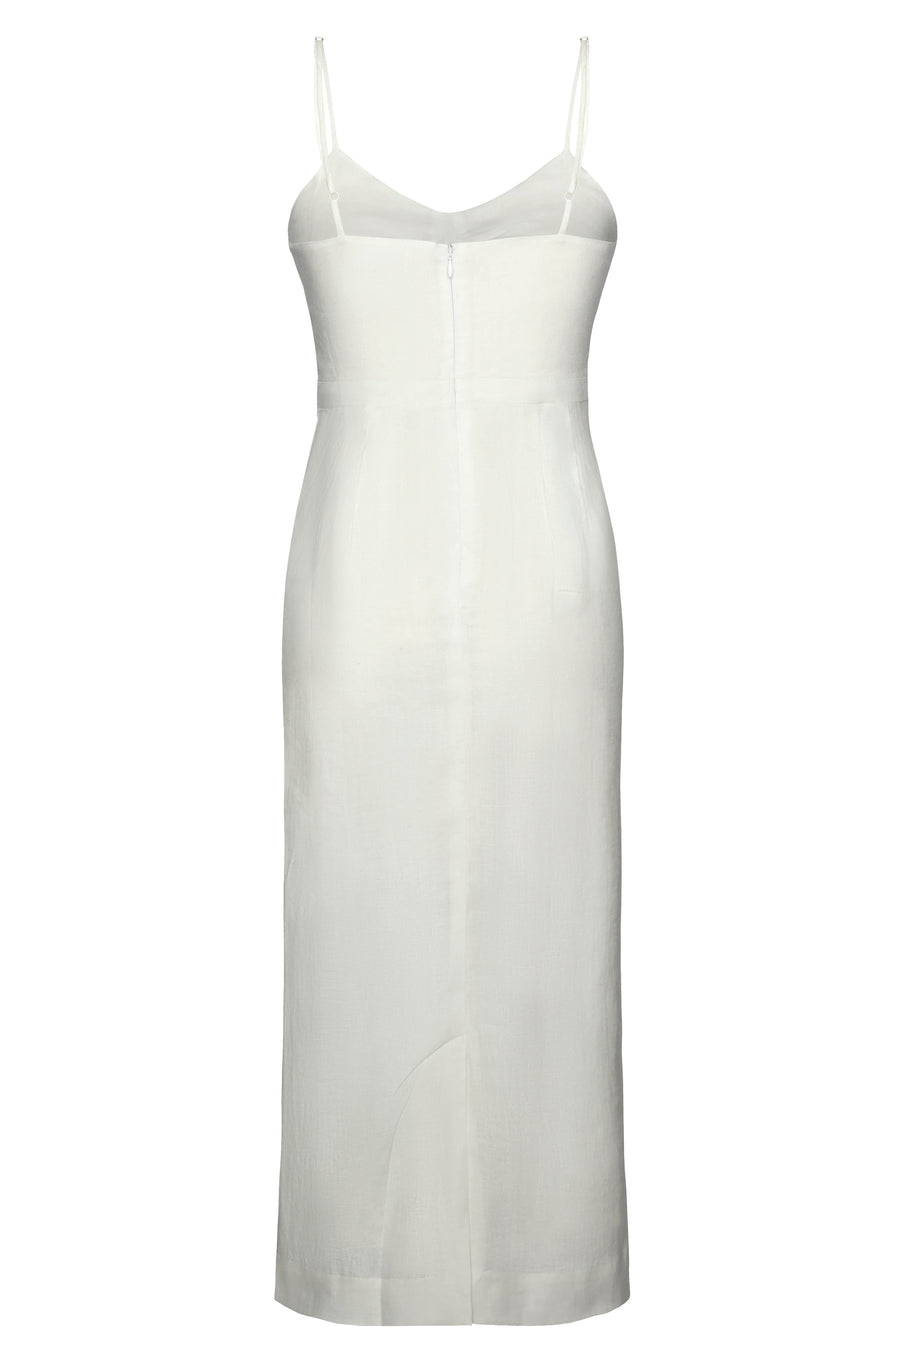 Laura Dress in White Linen